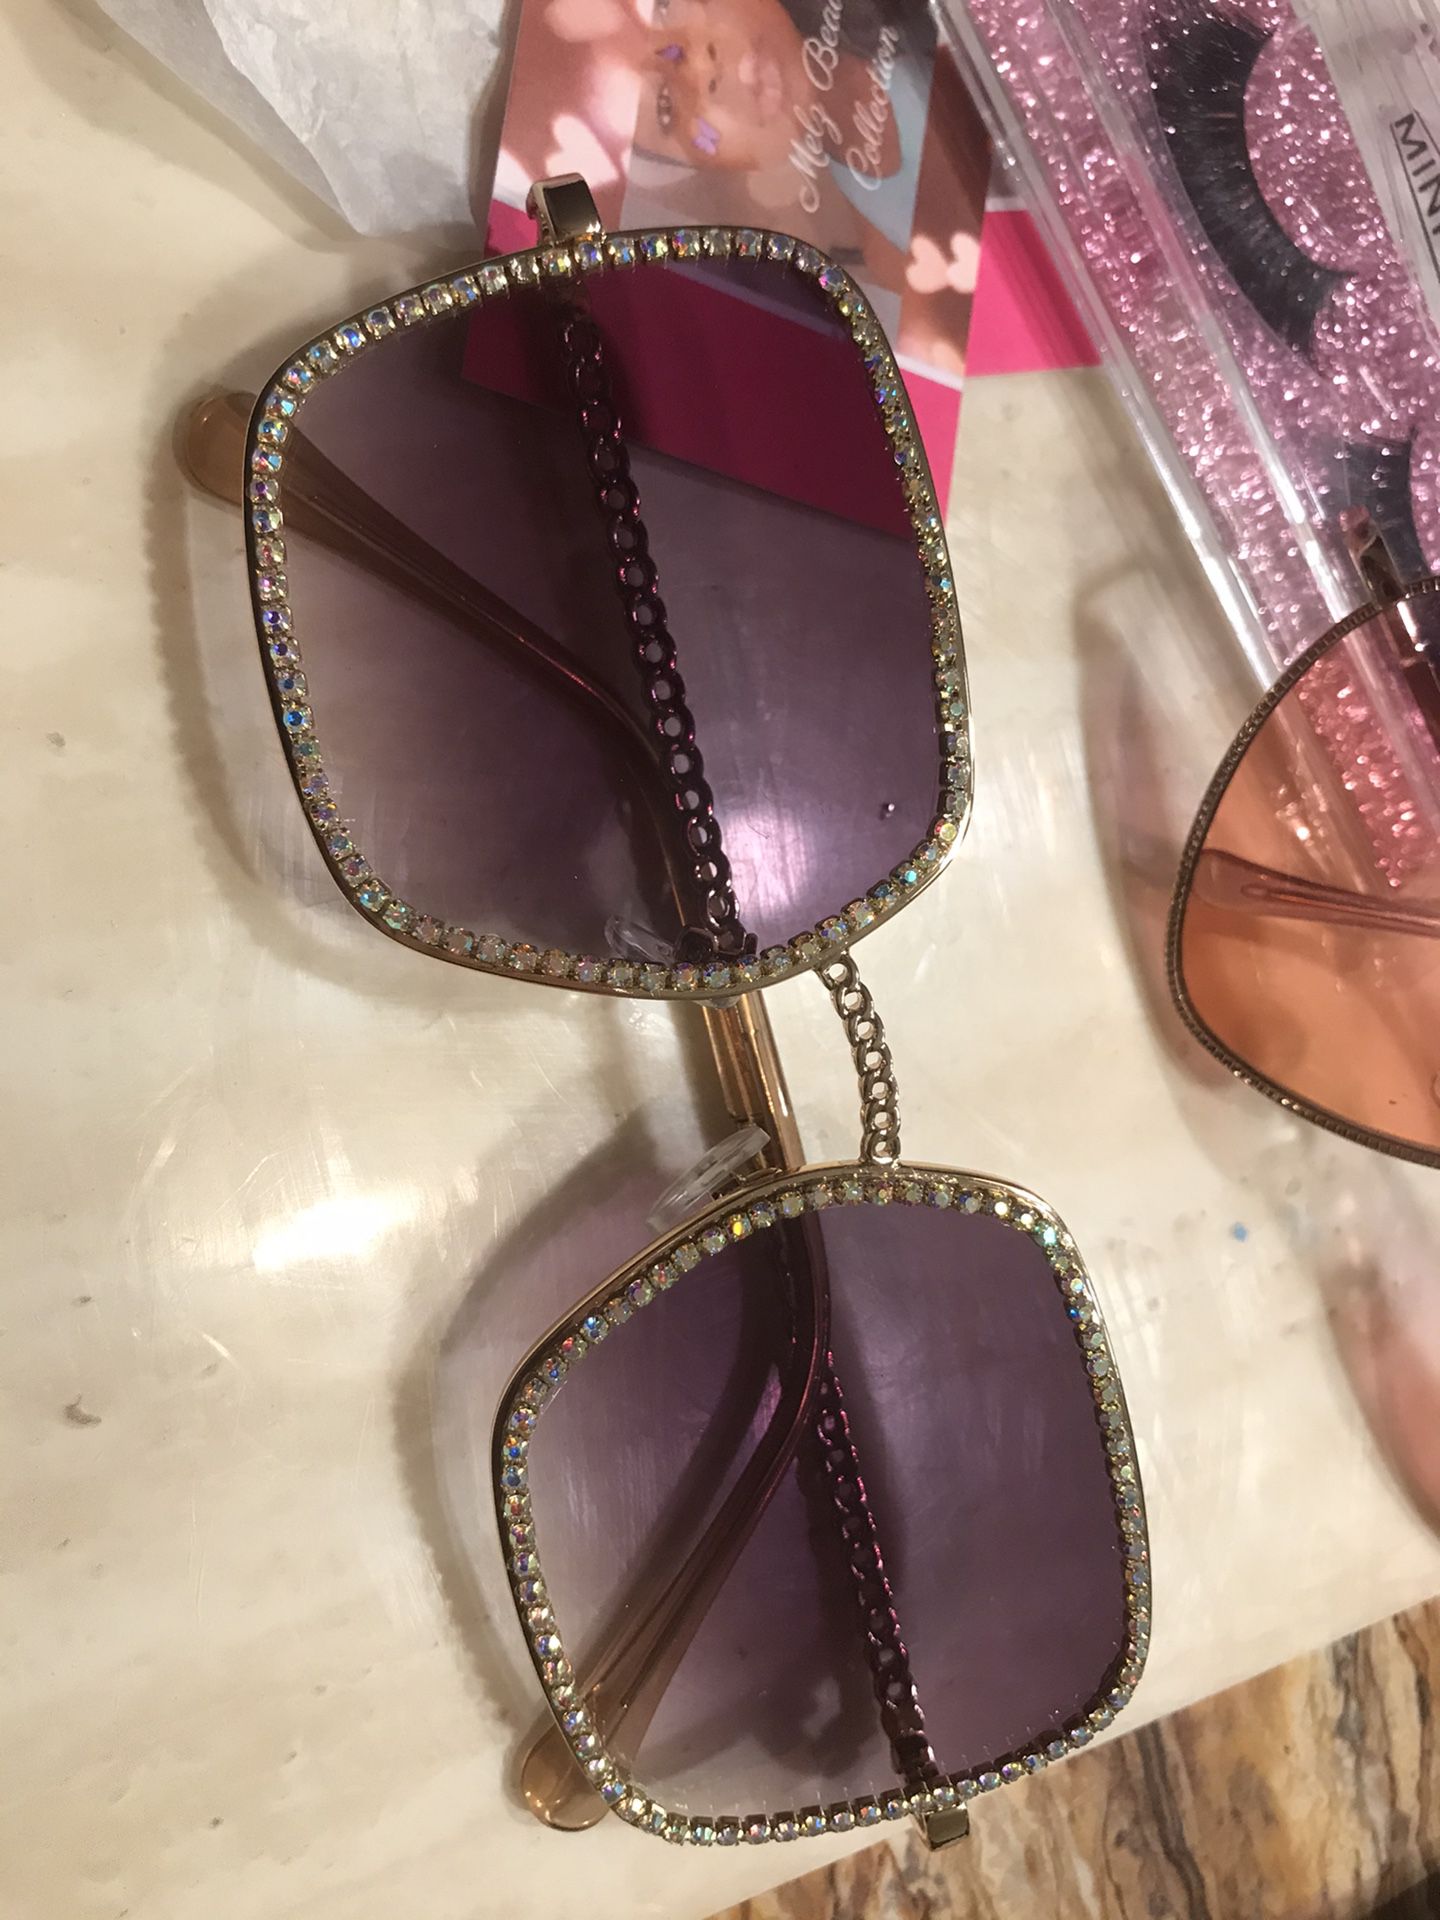 Beauty sunglasses